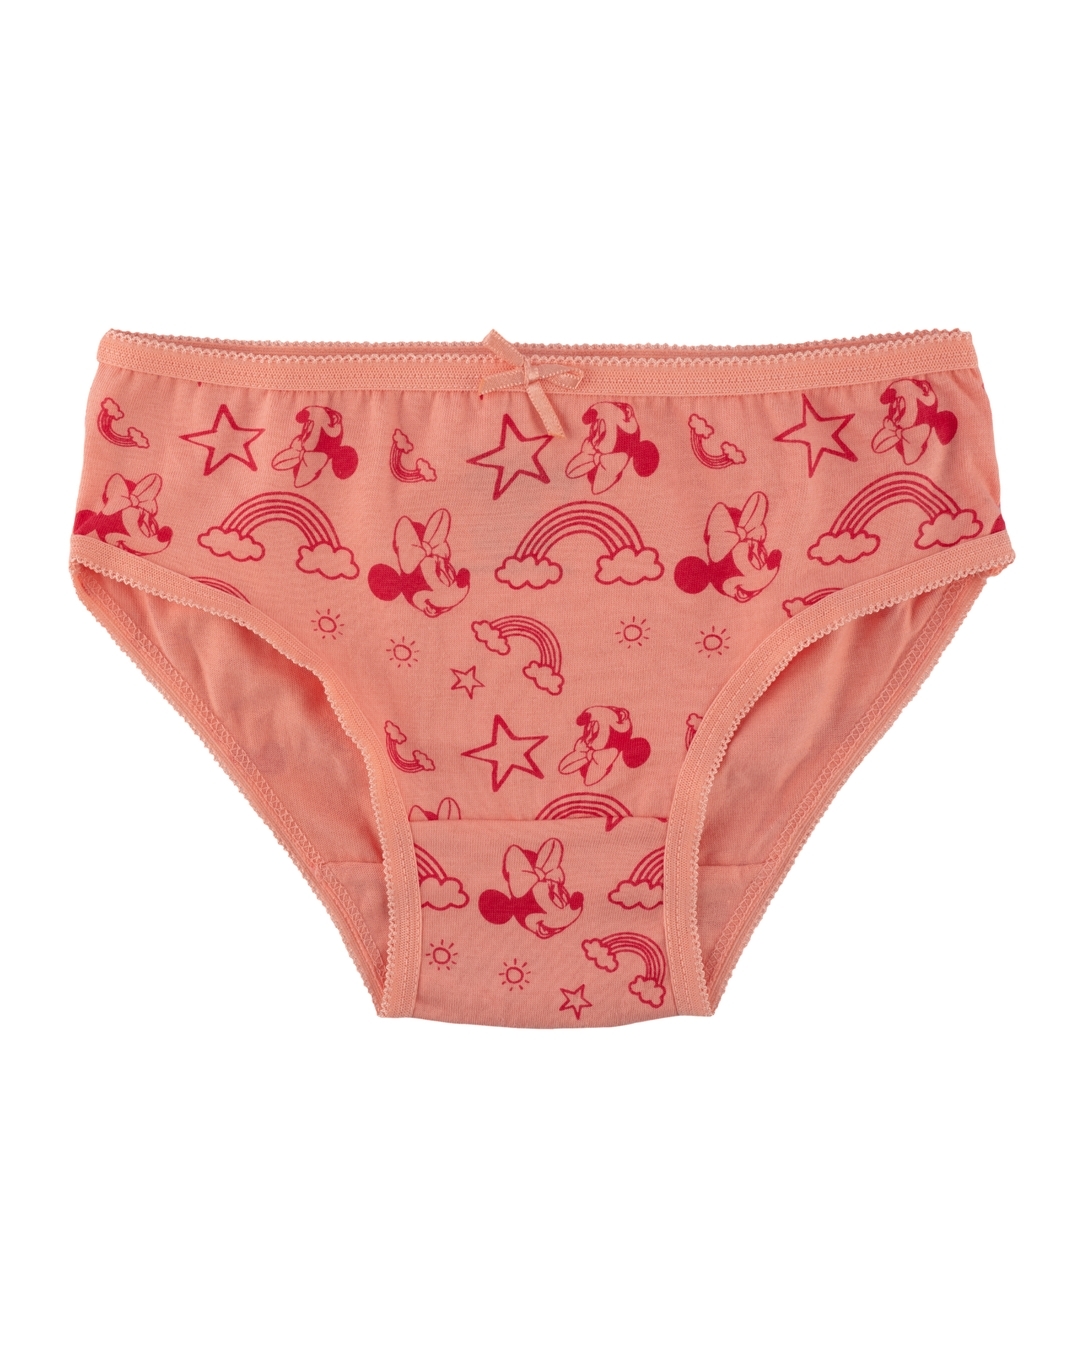 Buy Nuluv Girls Cotton Printed Panties Underwear Innerwear Multicolor (pack  Of 5) online